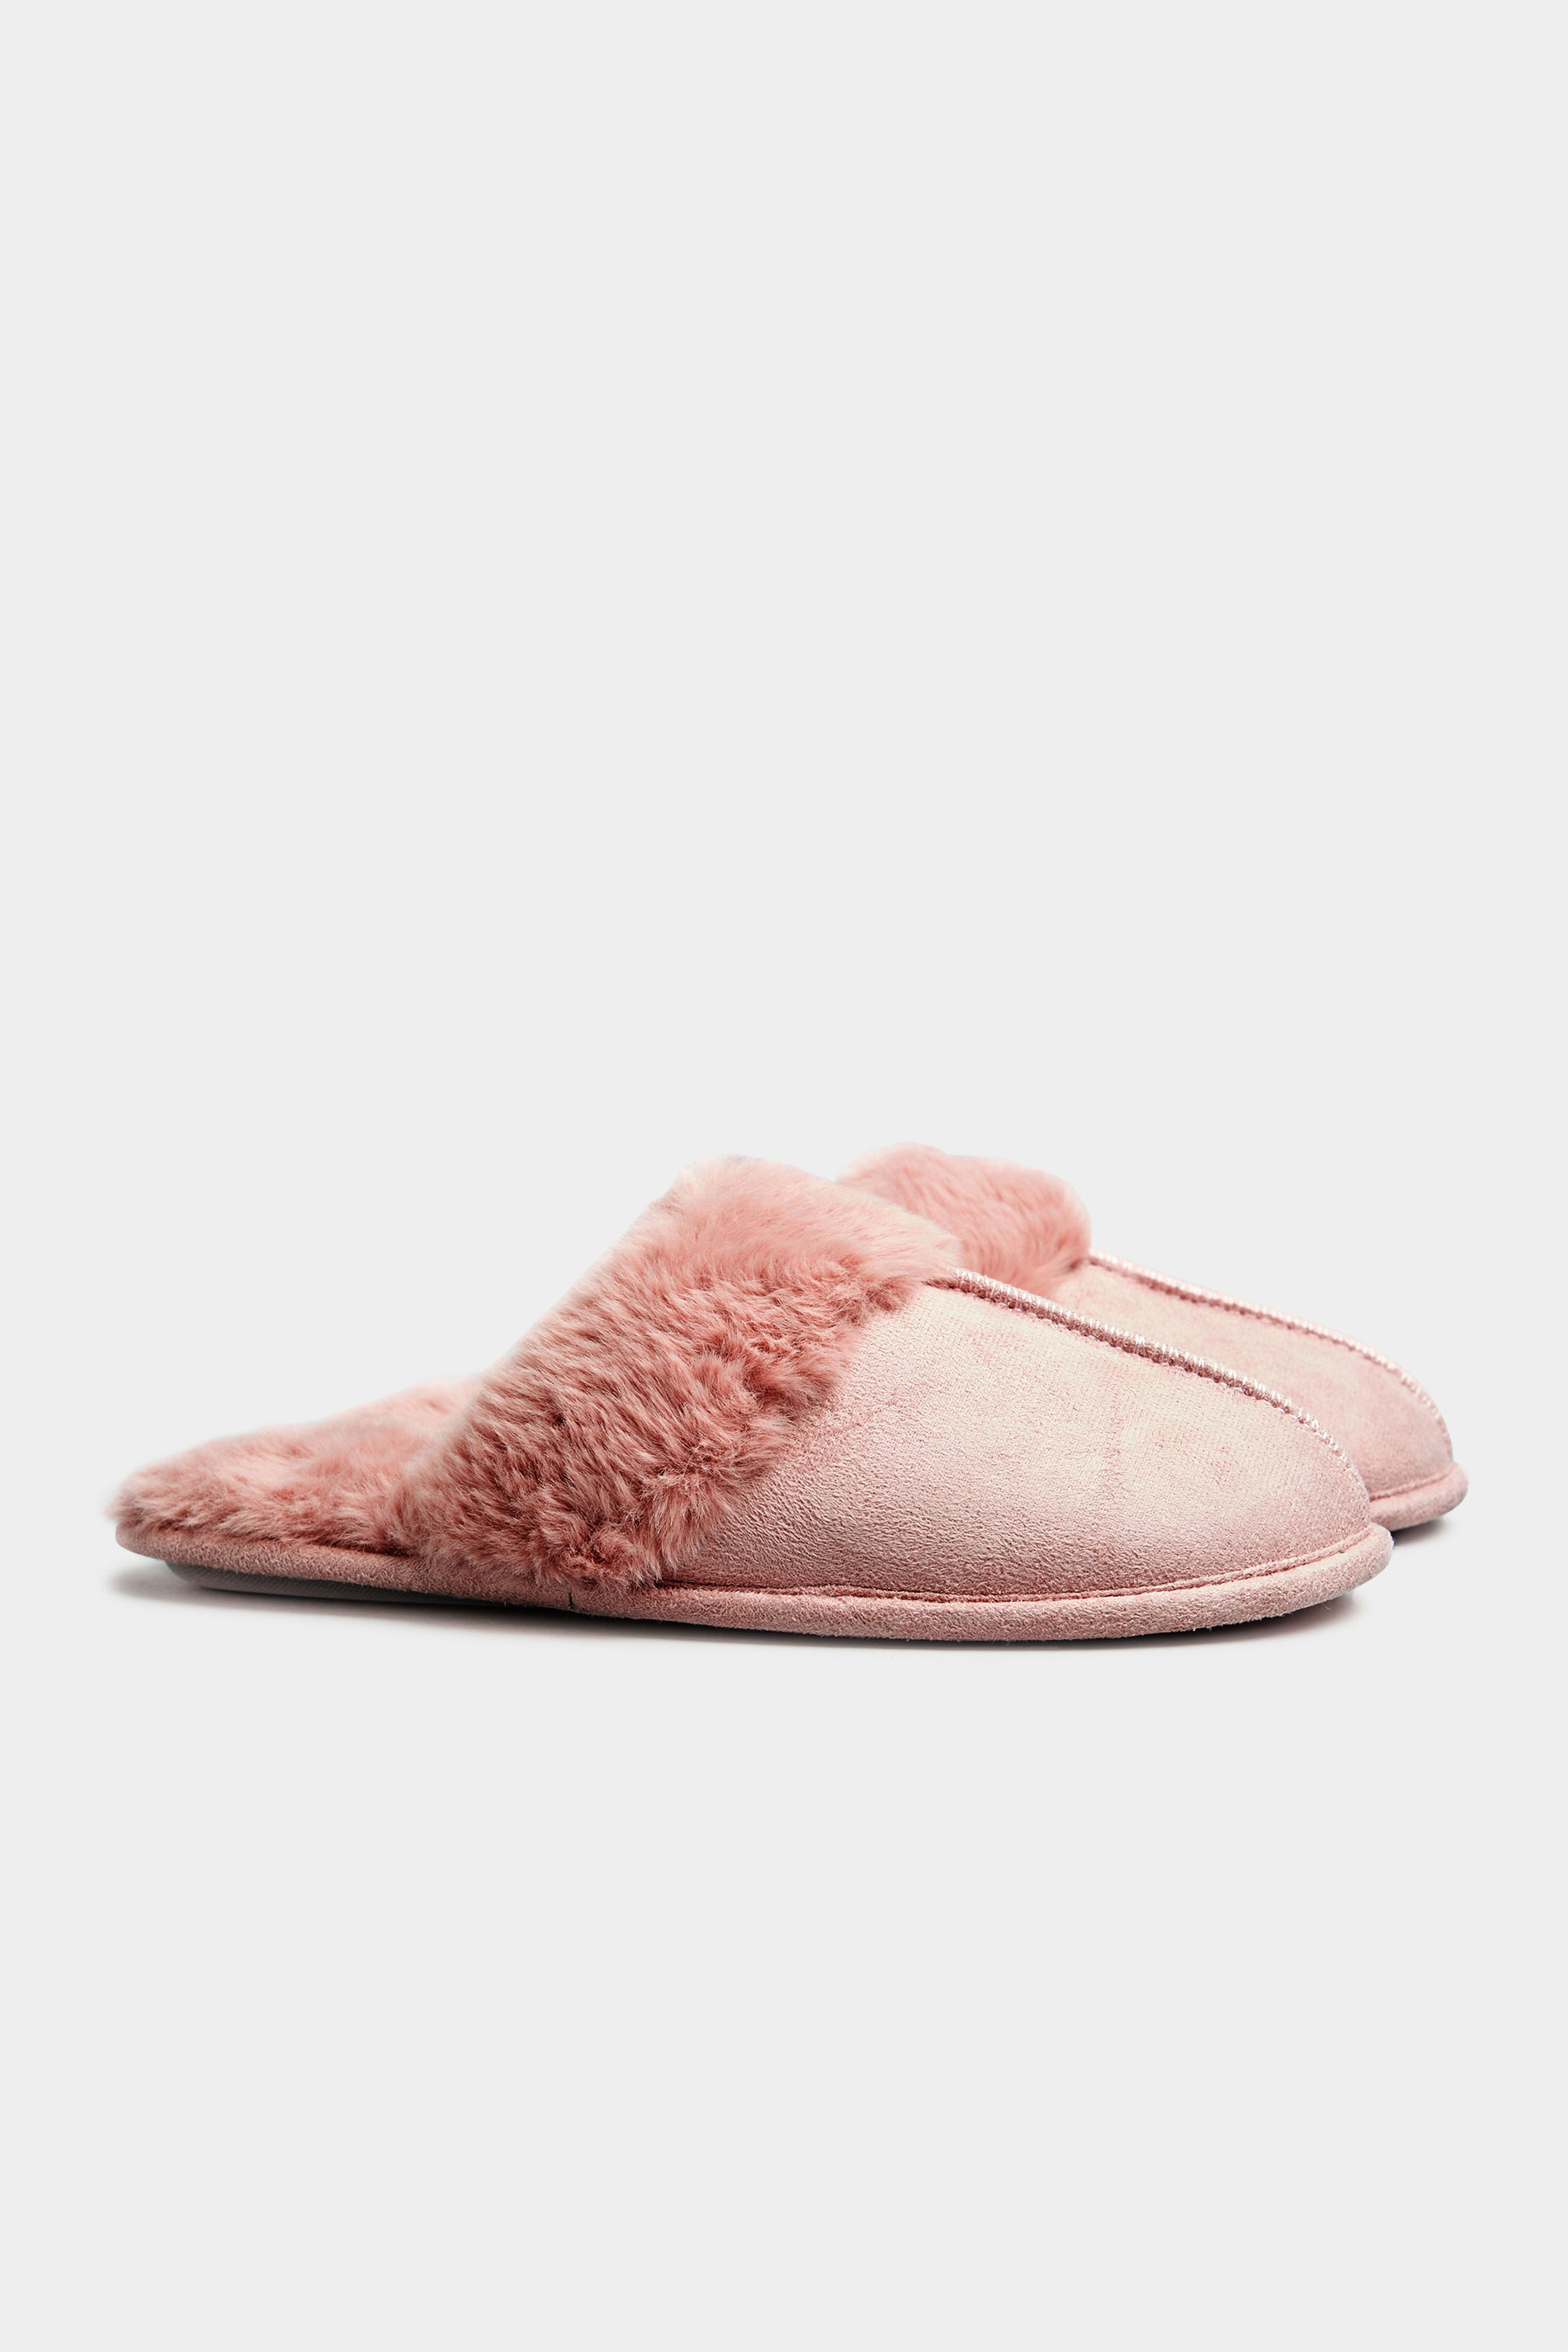 LTS Pink Fur Cuff Mule Slippers_C.jpg